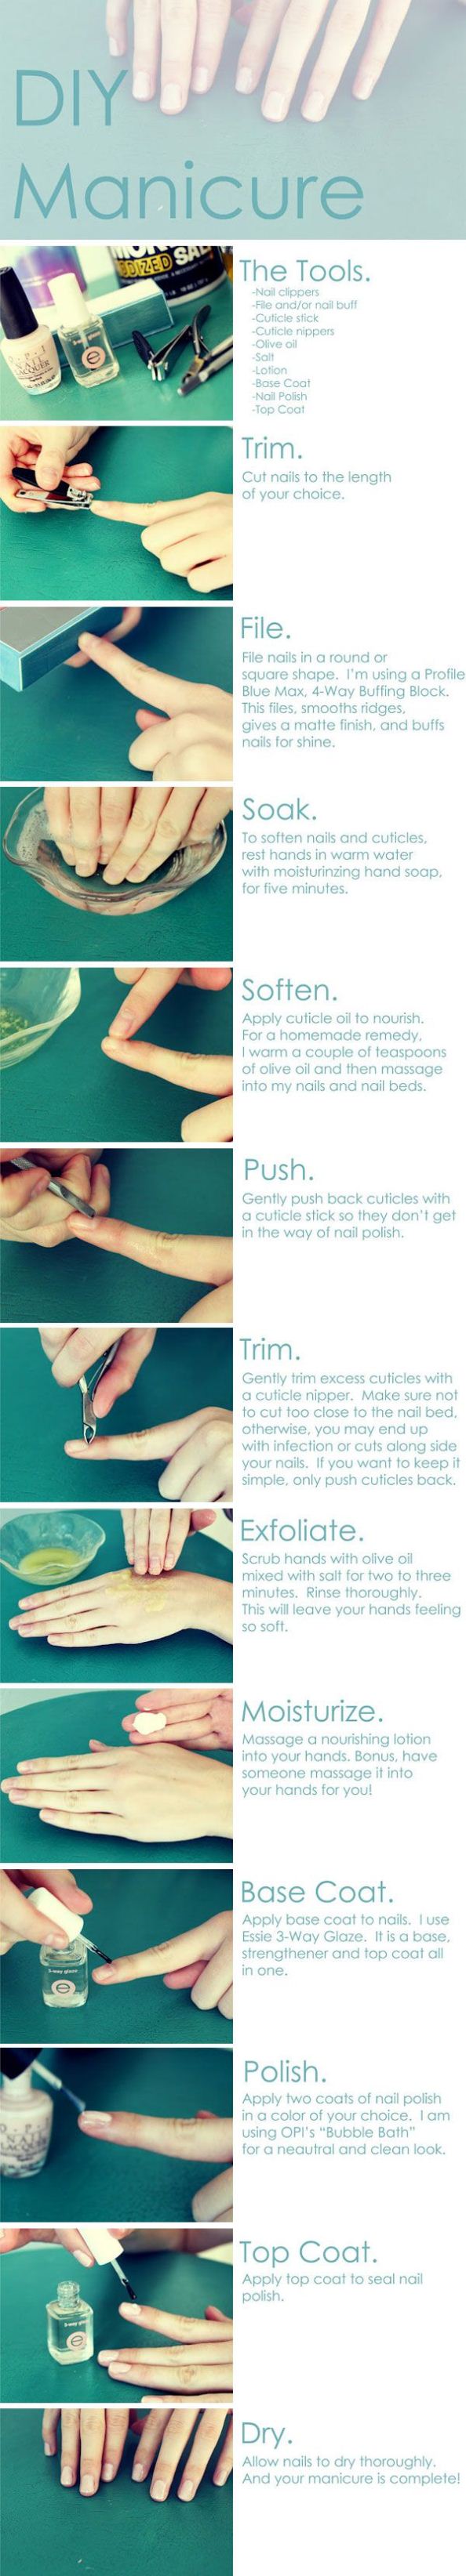 DIY Manicure